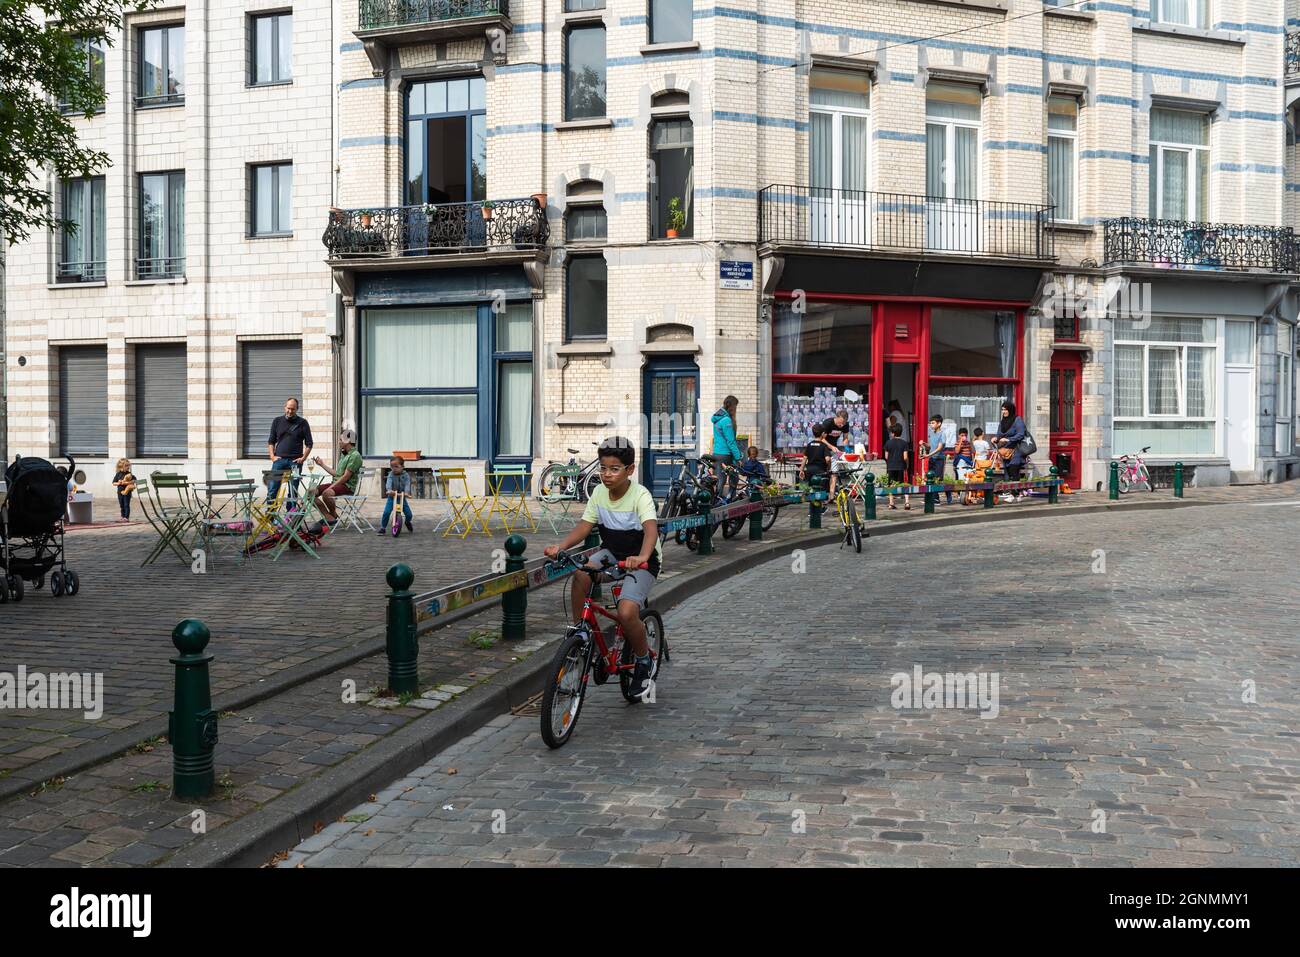 Garçon conduisant un vélo sur une route pavée à la voiture gratuitement dimanche Banque D'Images